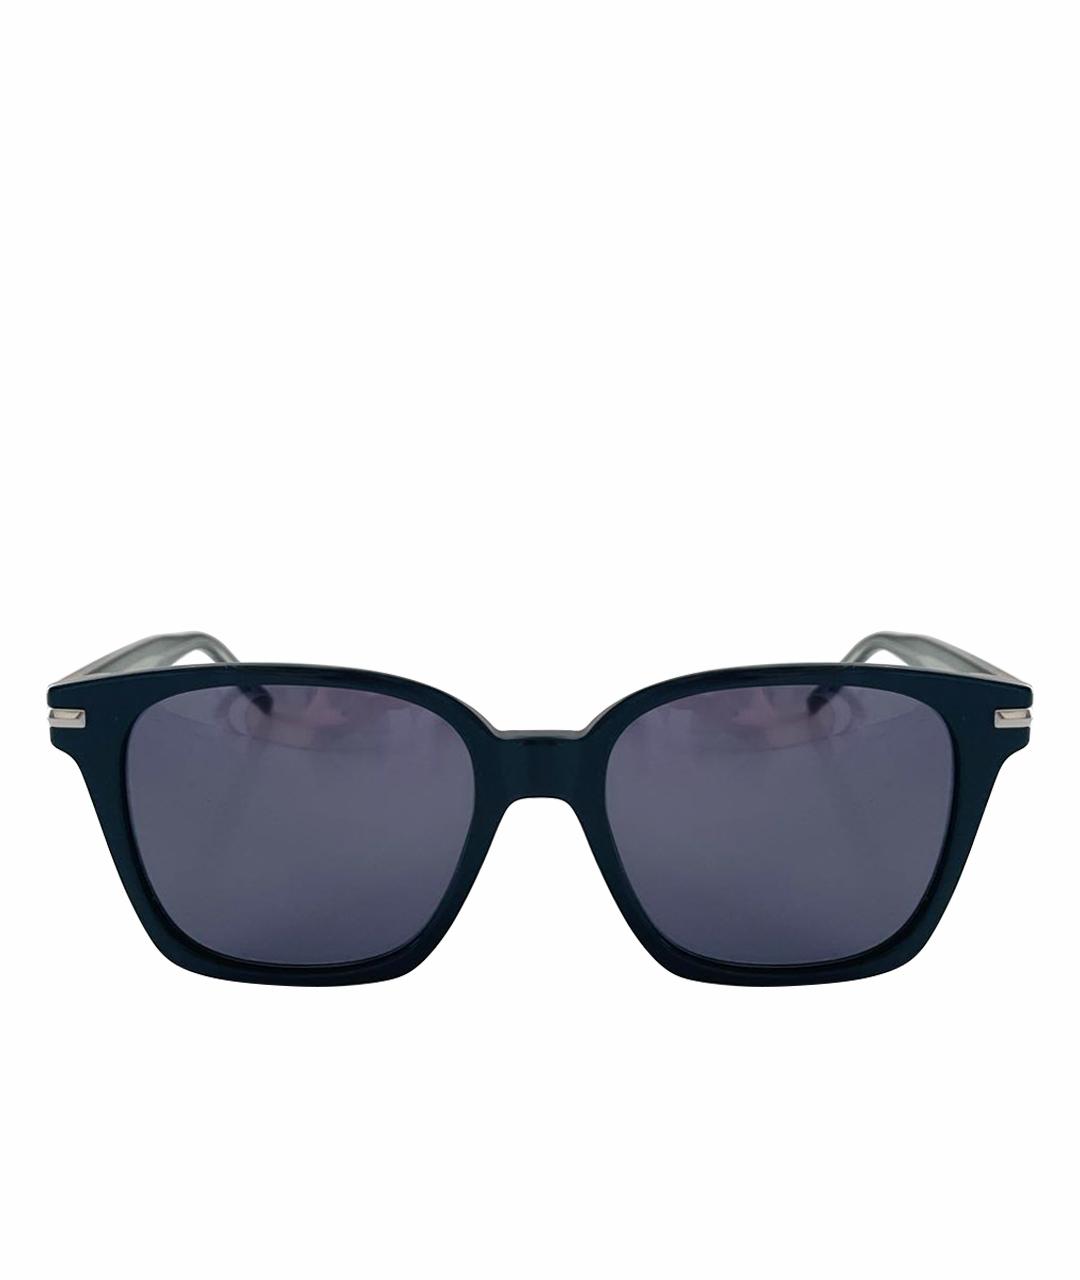 HUGO BOSS Черные пластиковые солнцезащитные очки, фото 1